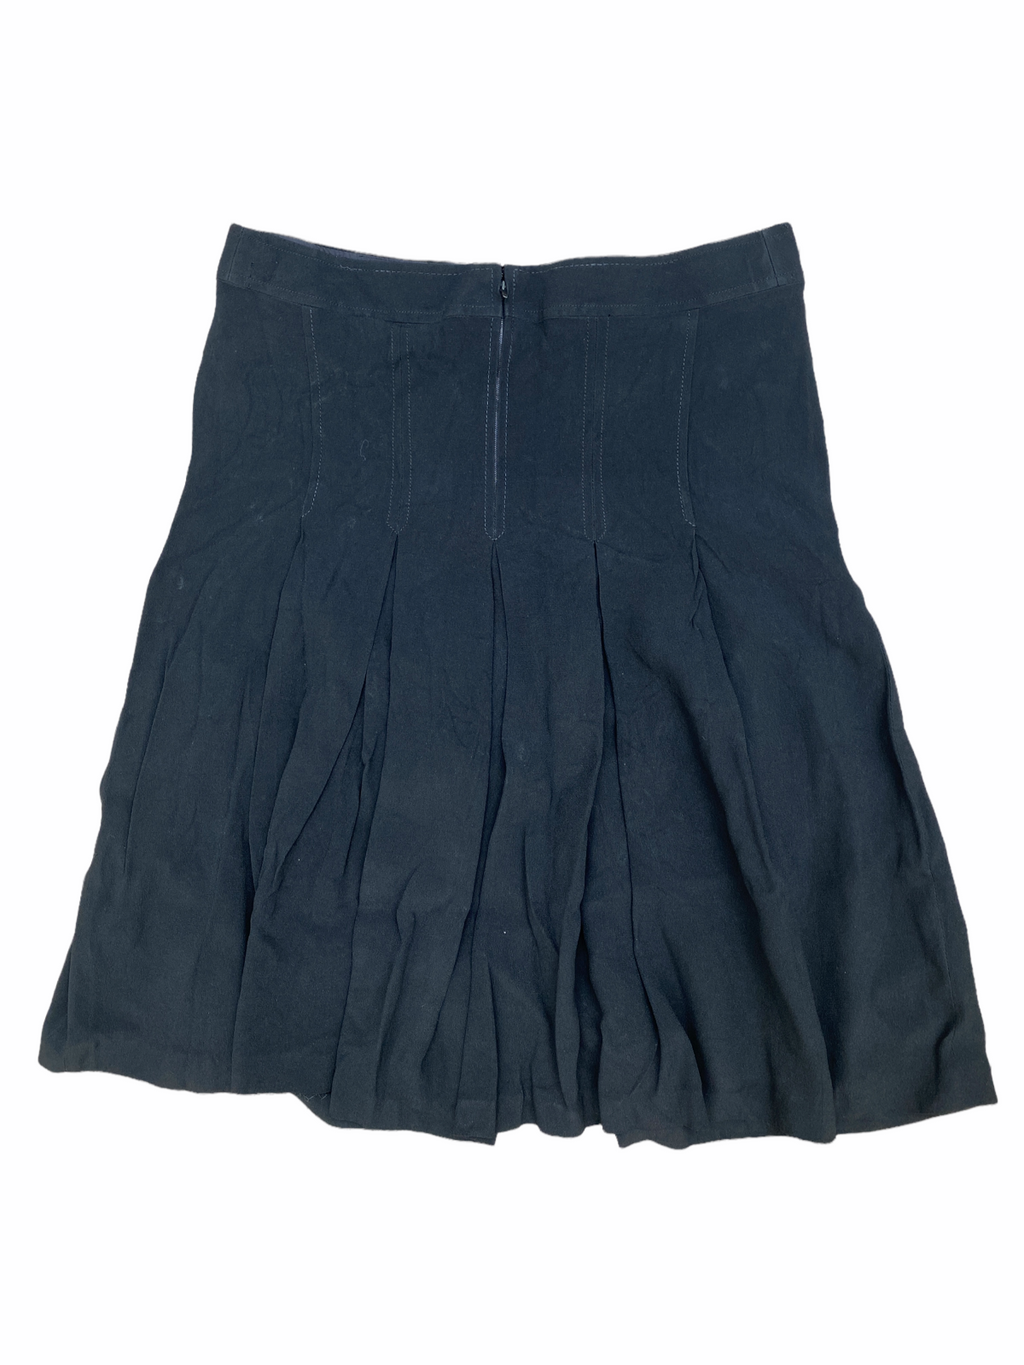 Vintage black skirt